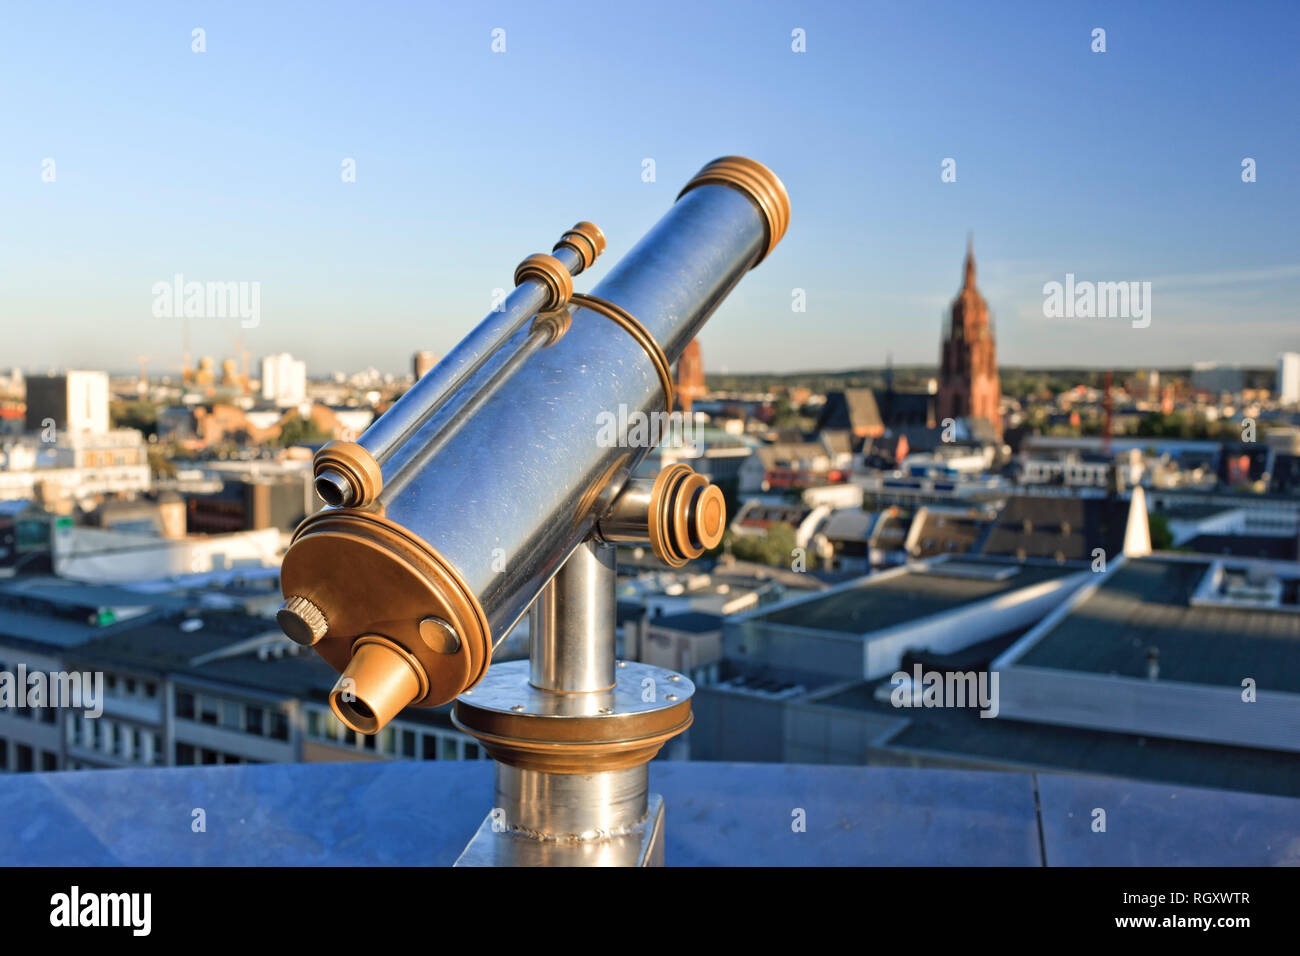 Teleskop auf der Aussichtsplattform der Zeilgalerie, Frankfurt, Hessen,  Deutschland, Europa Stockfotografie - Alamy